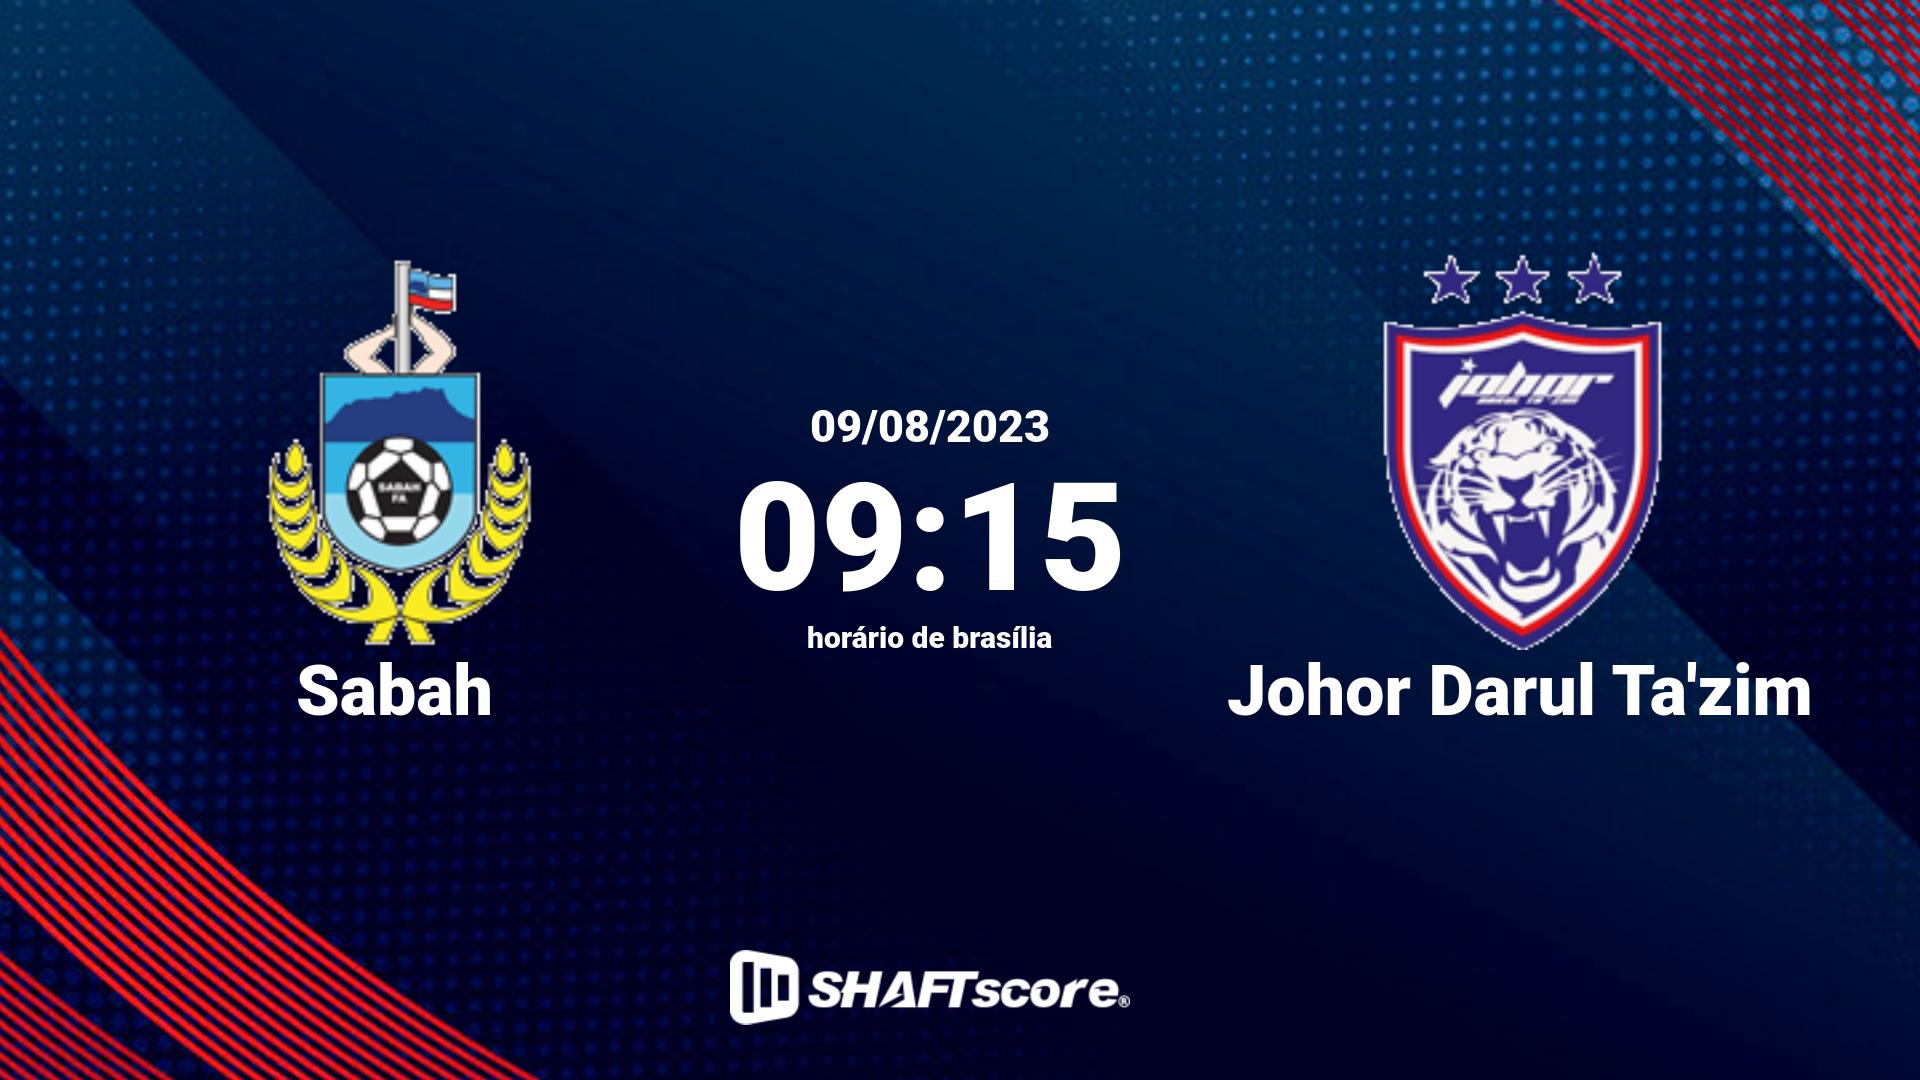 Estatísticas do jogo Sabah vs Johor Darul Ta'zim 09.08 09:15